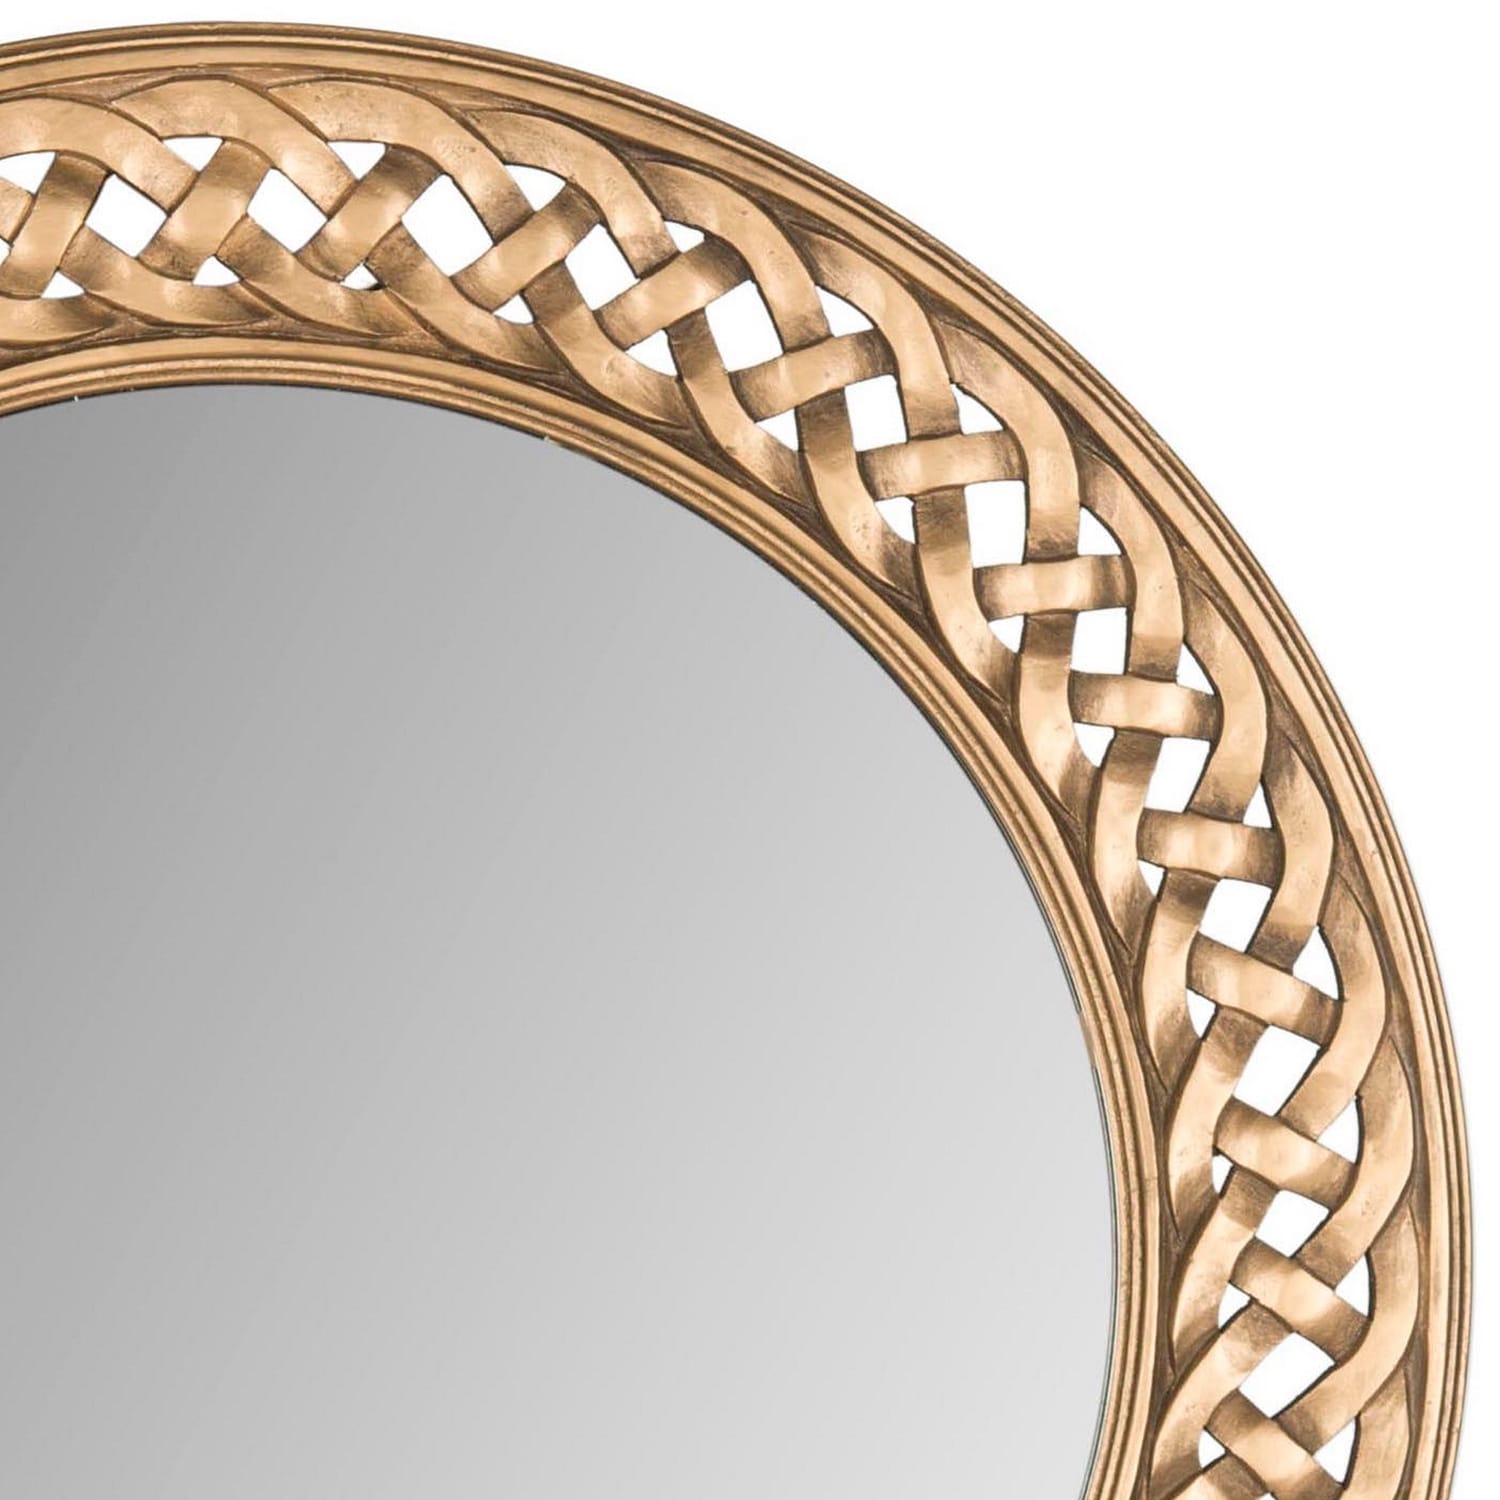 SAFAVIEH Braided Chain Gold 24-inch Round Decorative Mirror 24